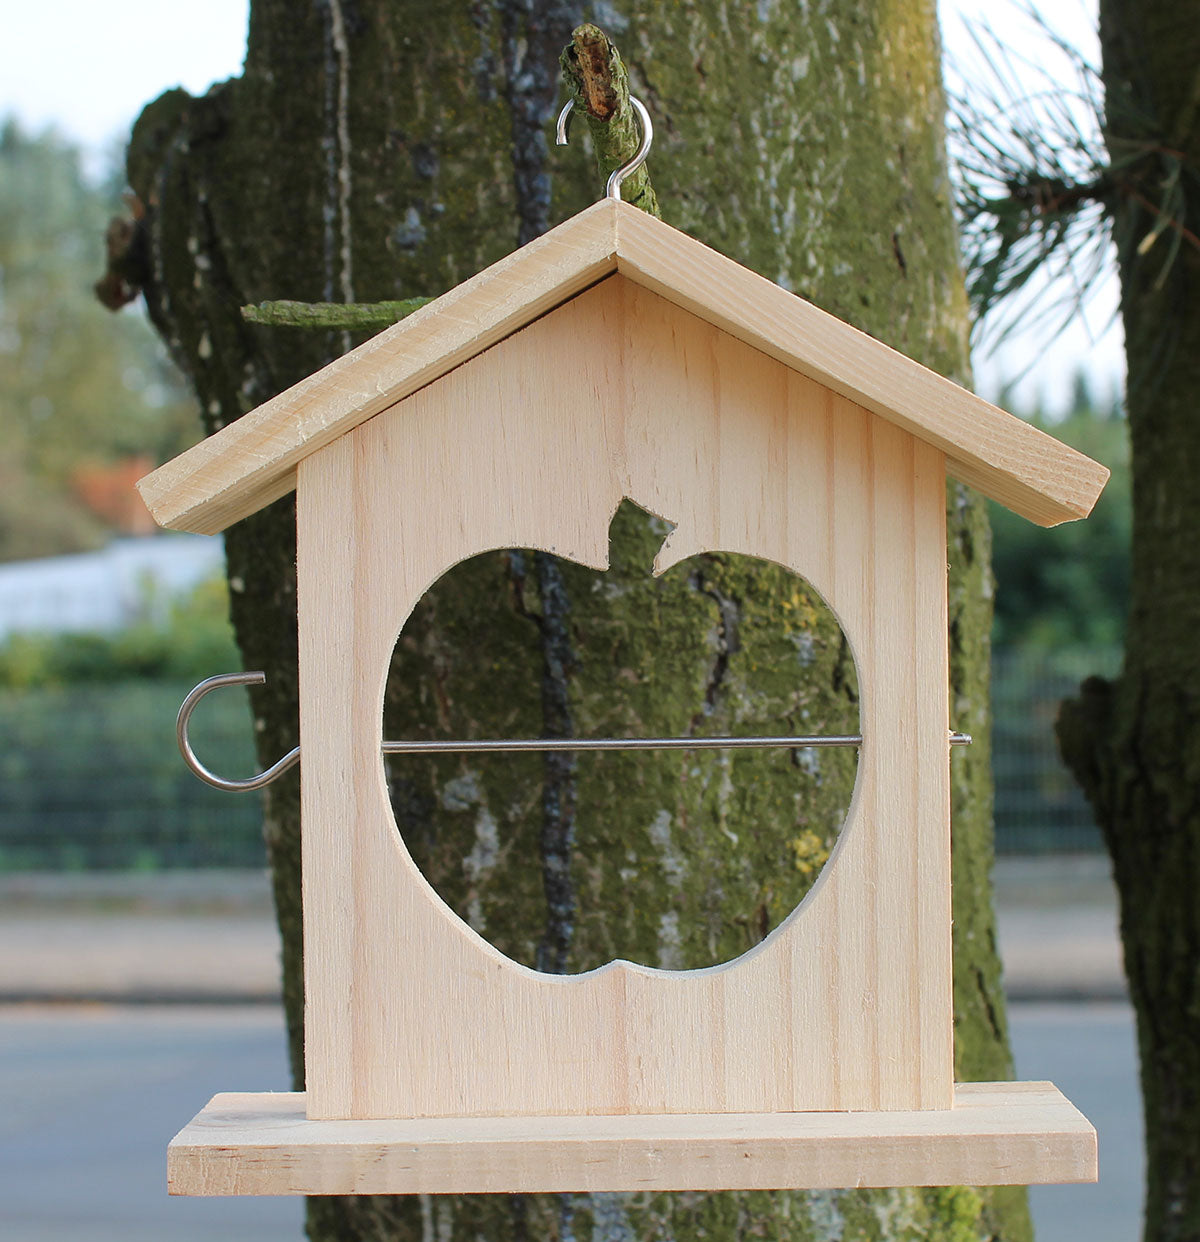 Apfel-Futterhäuschen zum Vögel füttern Meisenknödelhalter Vogelfutterhaus